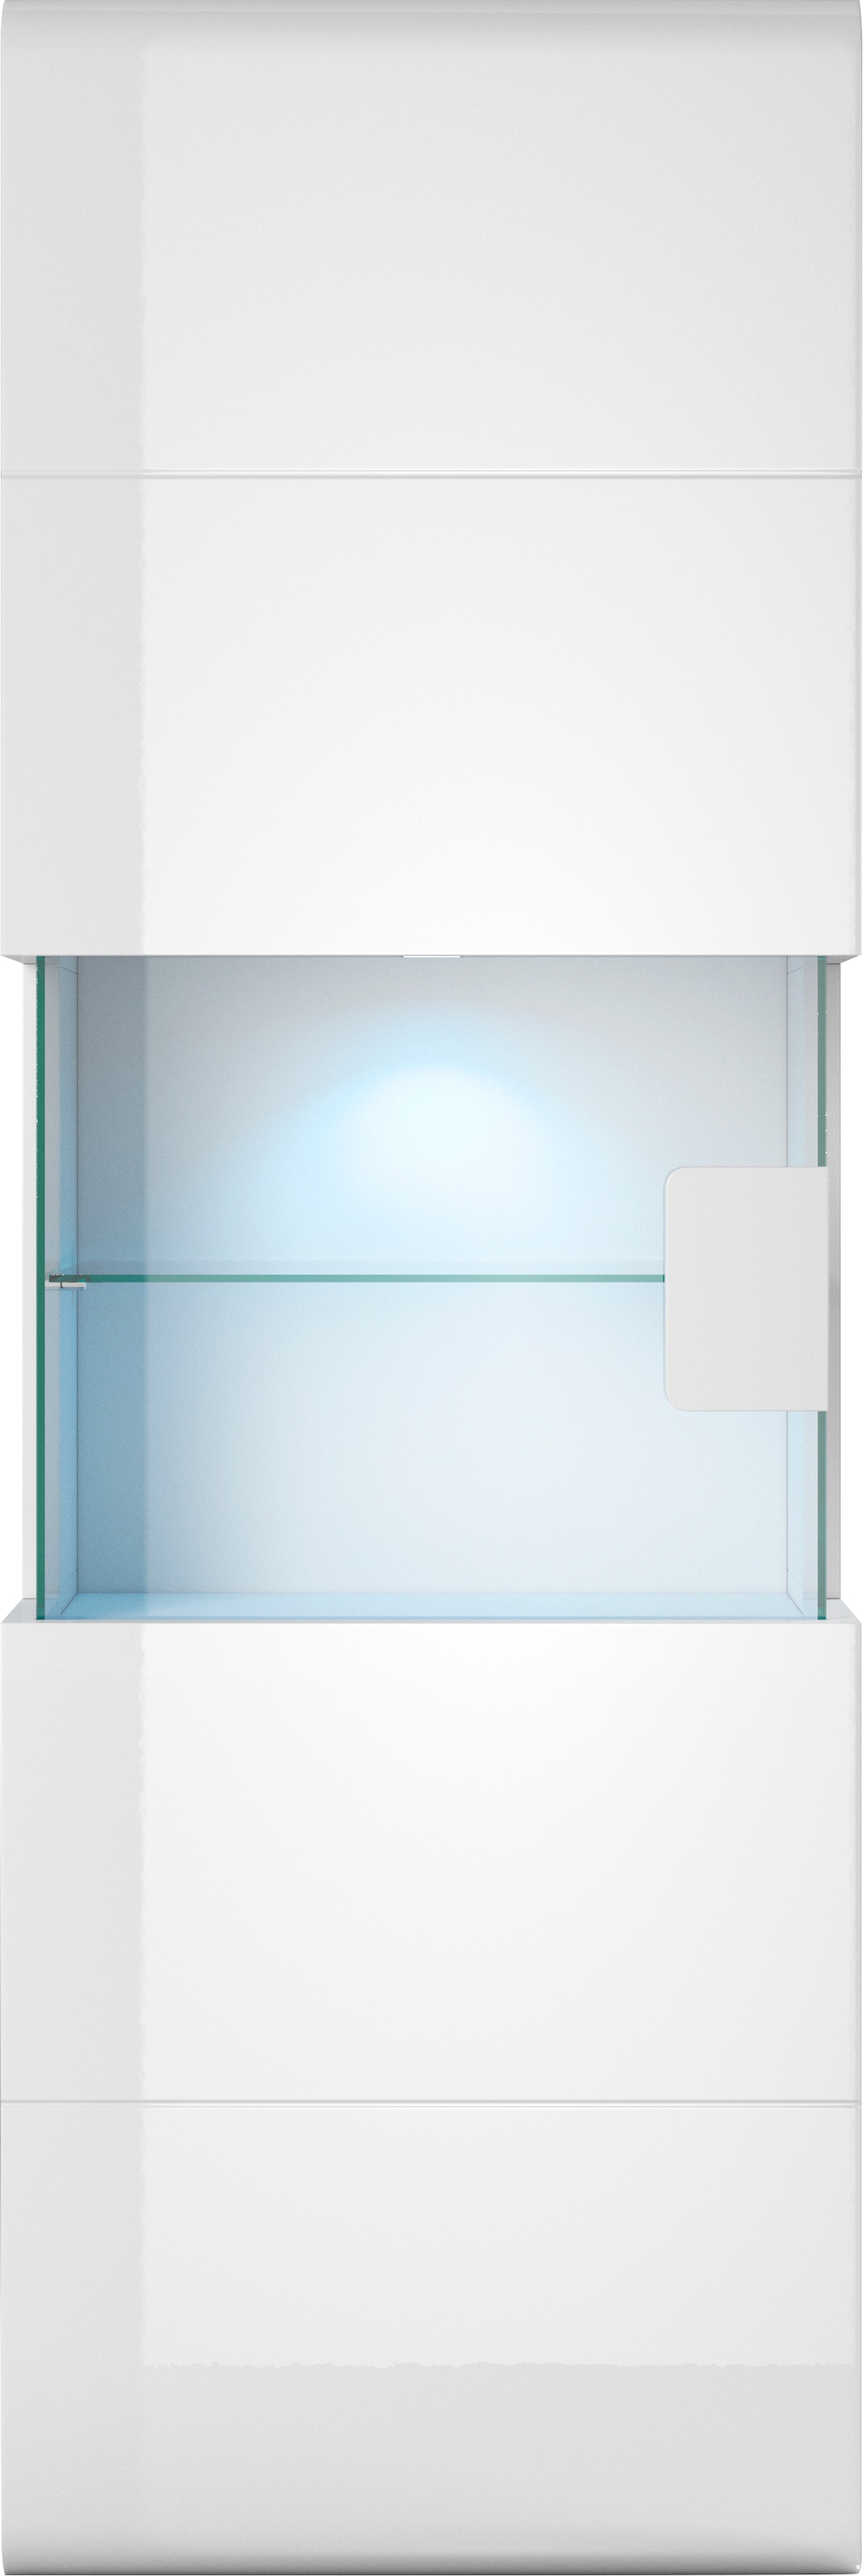 INOSIGN Hängevitrine »Toledo,Höhe 159 cm trendige Glasvitrine mit dekorative MDF-Front«, Vitrine mit Glasfront, ohne Beleuchtung, viel Stauraum, hochglanz